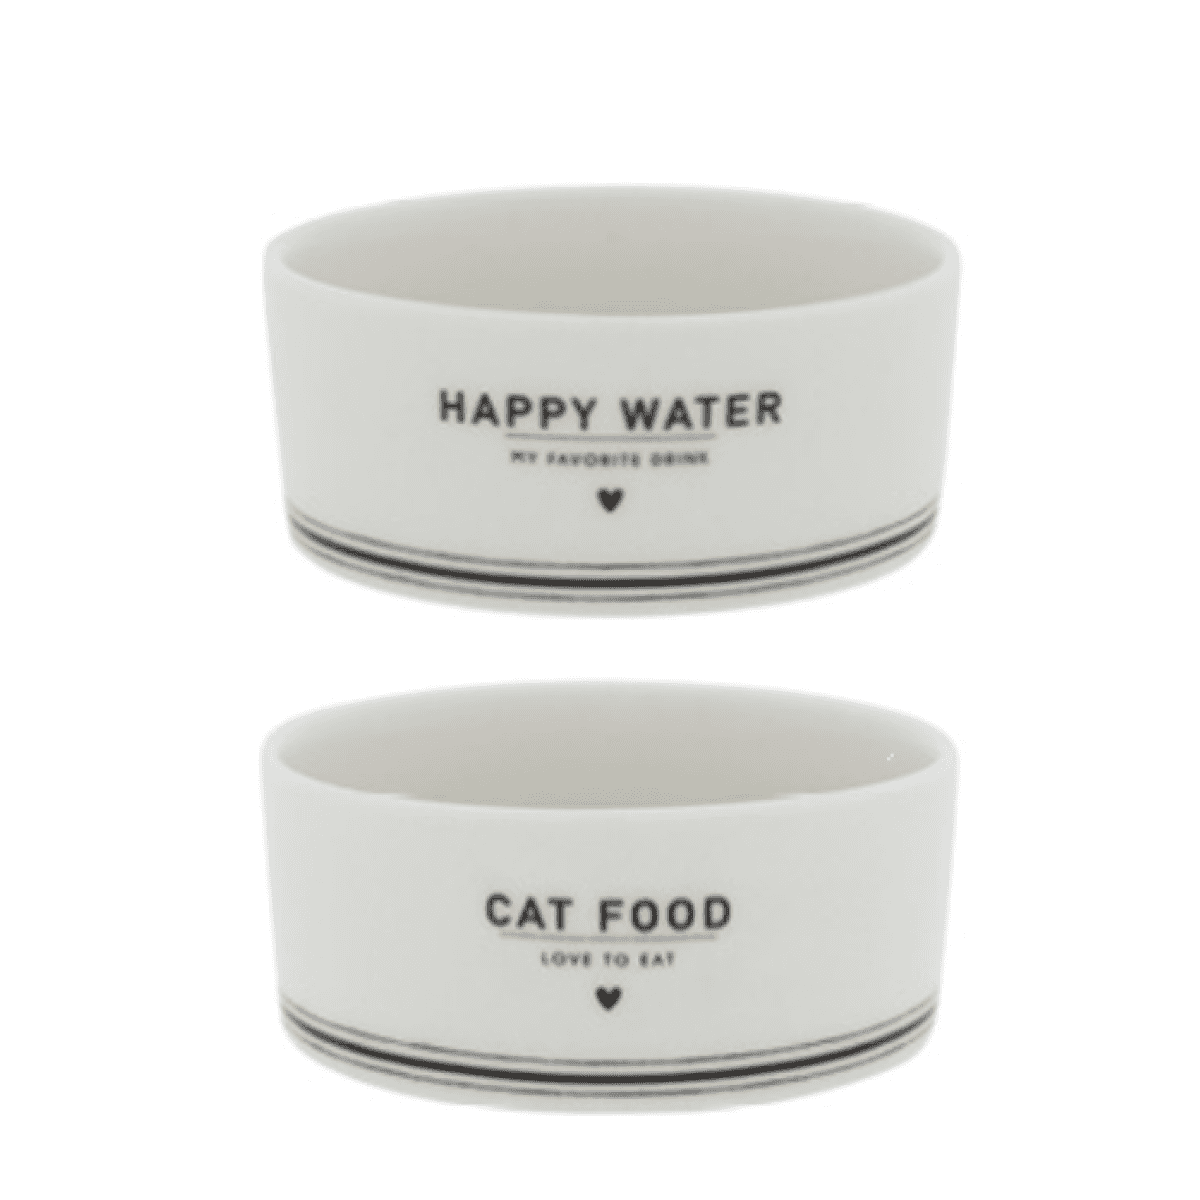 Immagine del prodotto Set 2 Ciotole Cibo e Acqua per Gatti Cat Food & Happy Water | Bastion Collections